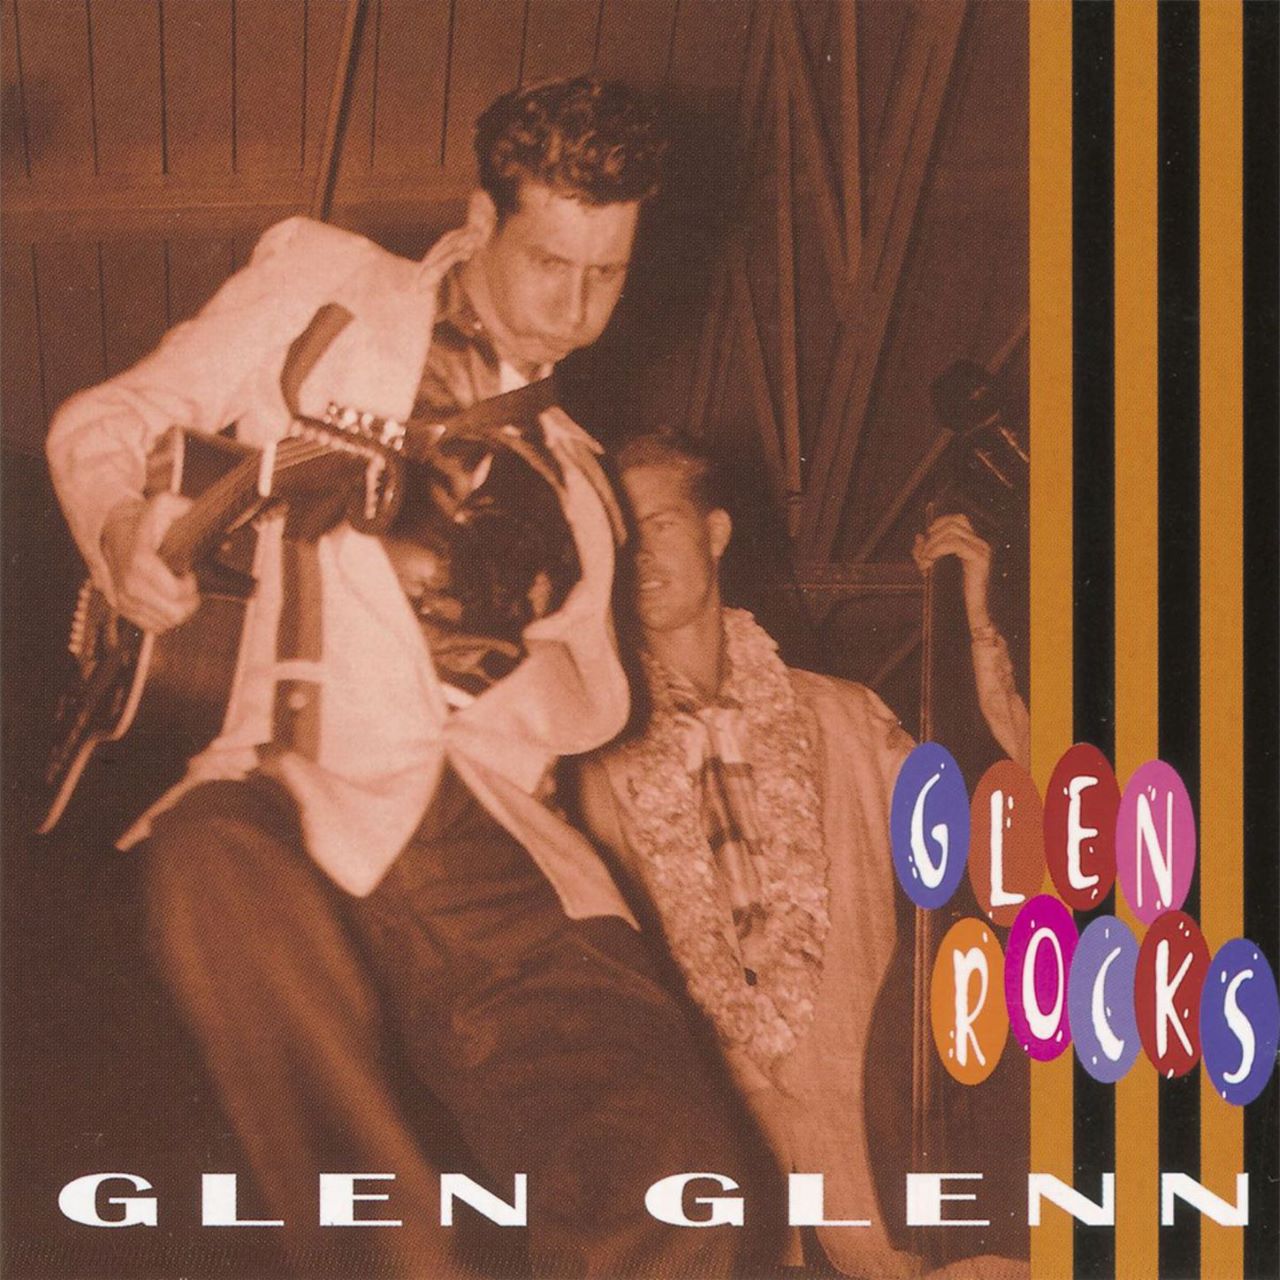 Glen Glenn - Glen Rocks cover album